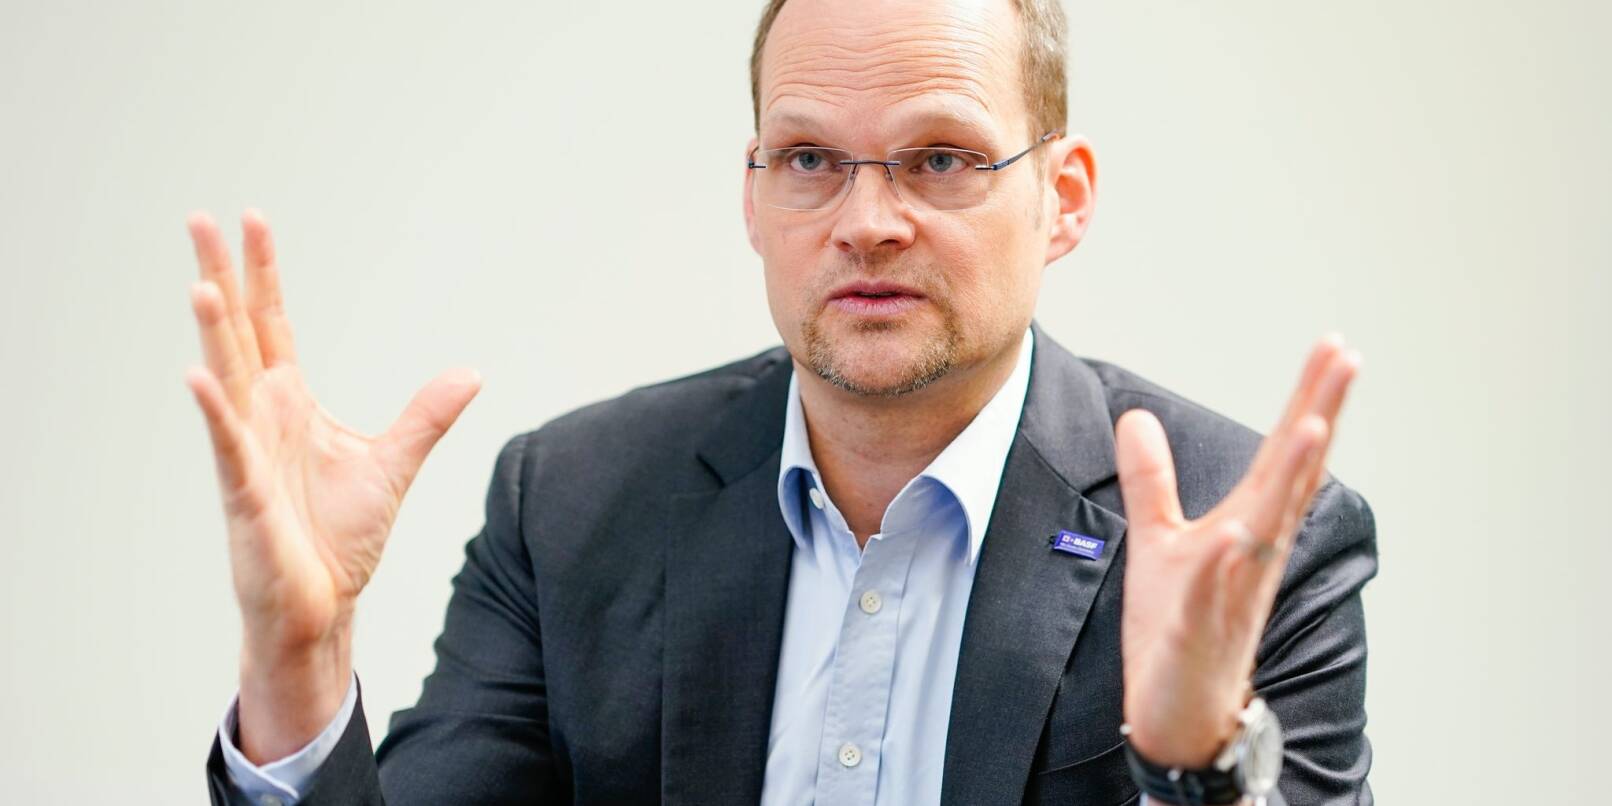 Die Wirtschaft leide massiv unter immer stärker werdendem Regulierungsdruck, so BASF-Finanzvorstand Dirk Elvermann.